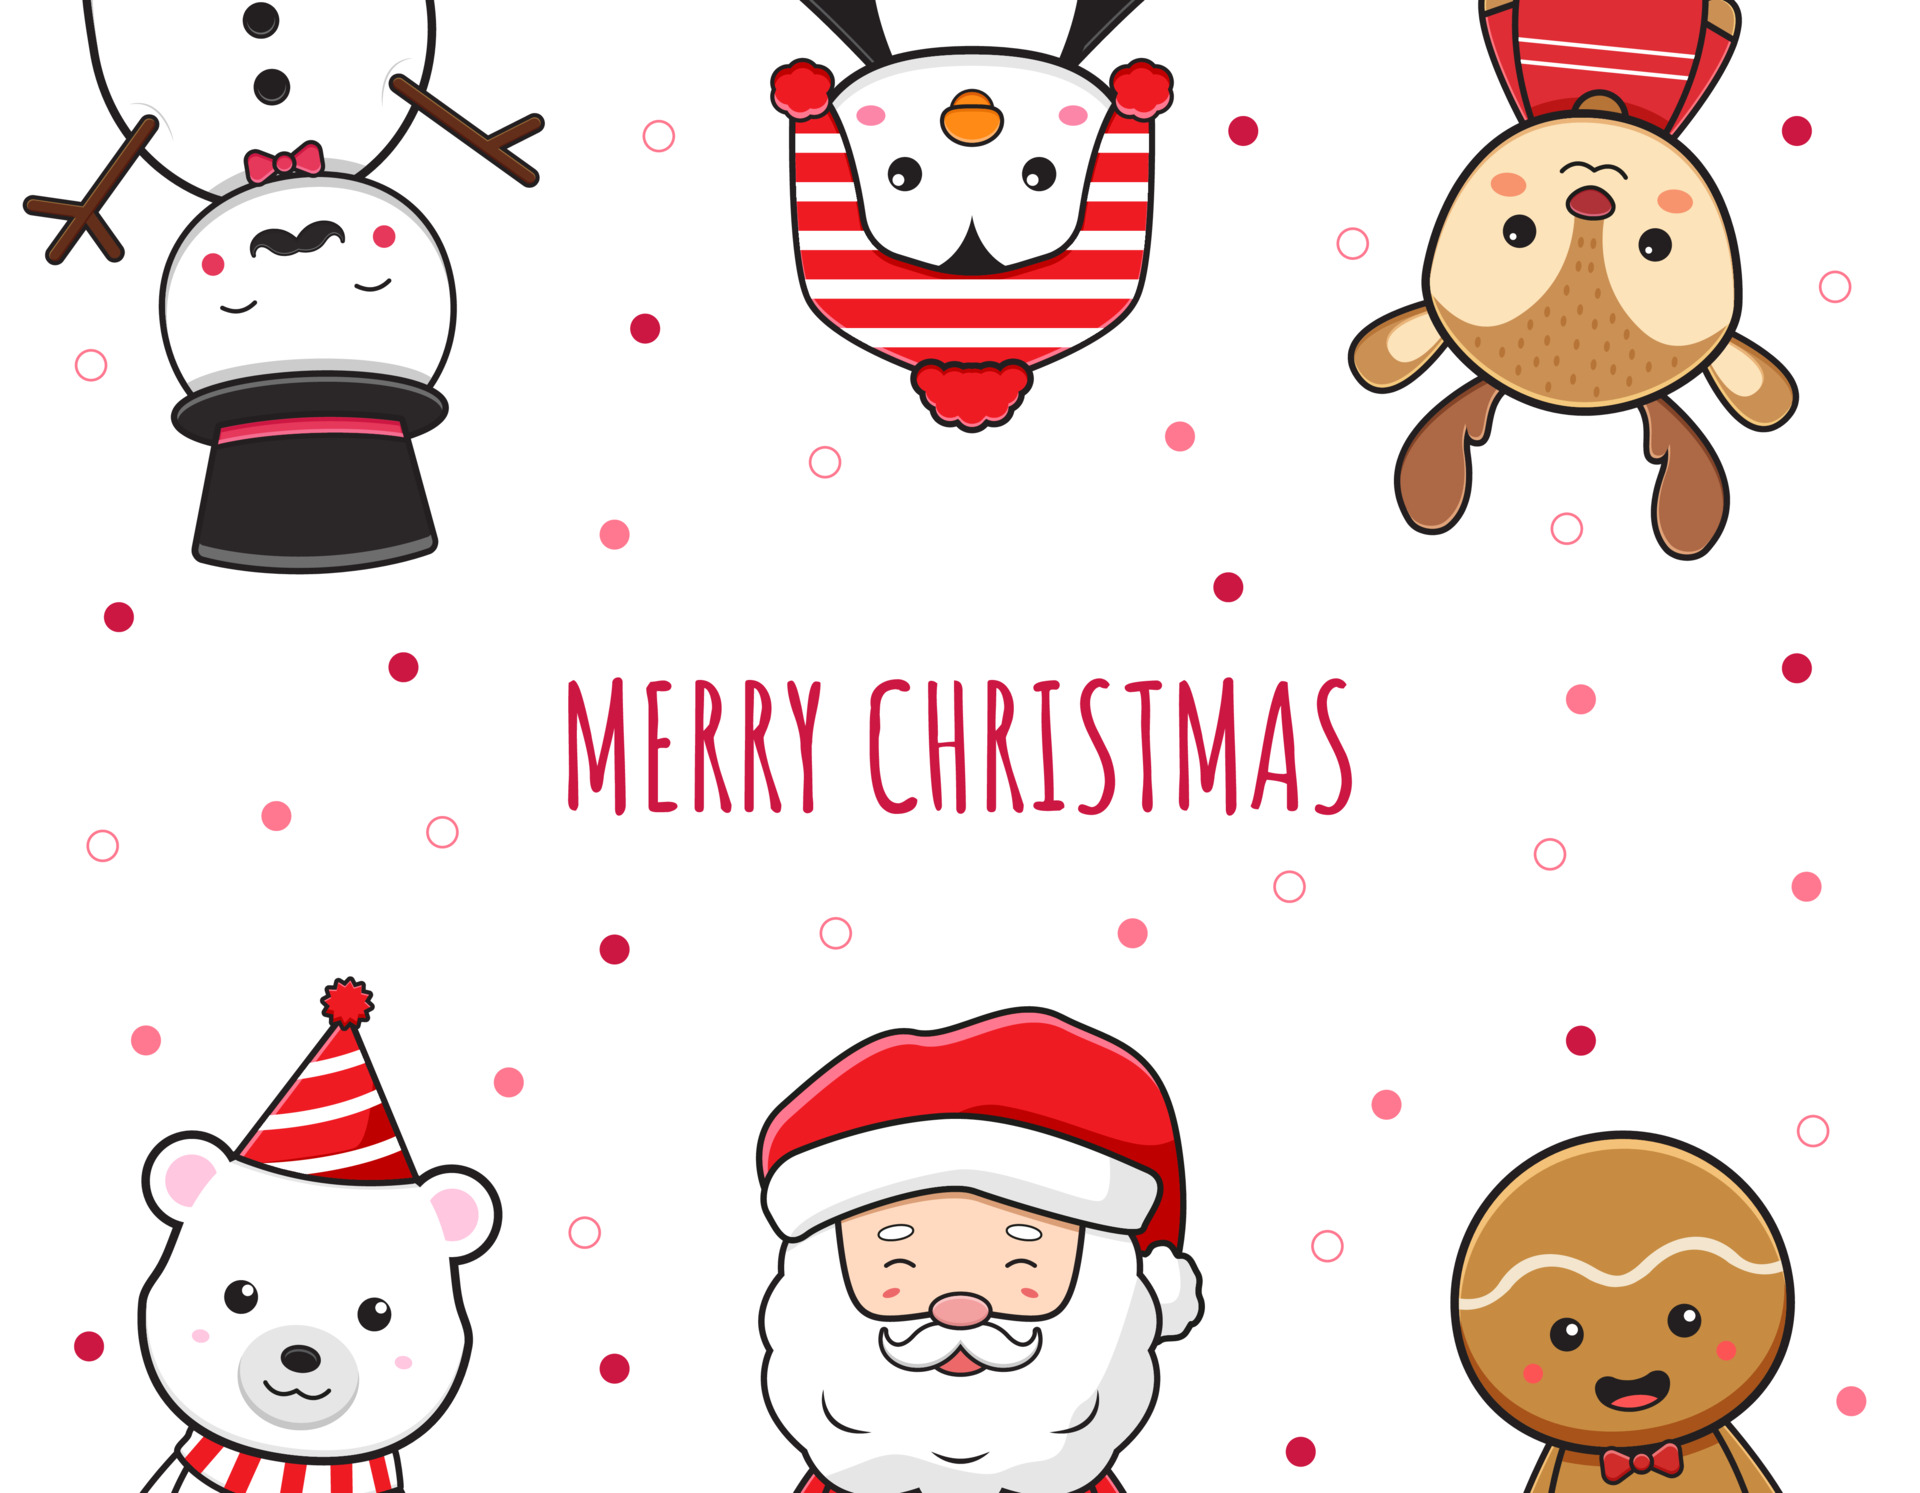 Merry Christmas cartoon doodle - Góc nhìn vui nhộn và đầy sáng tạo về những dòng chữ \